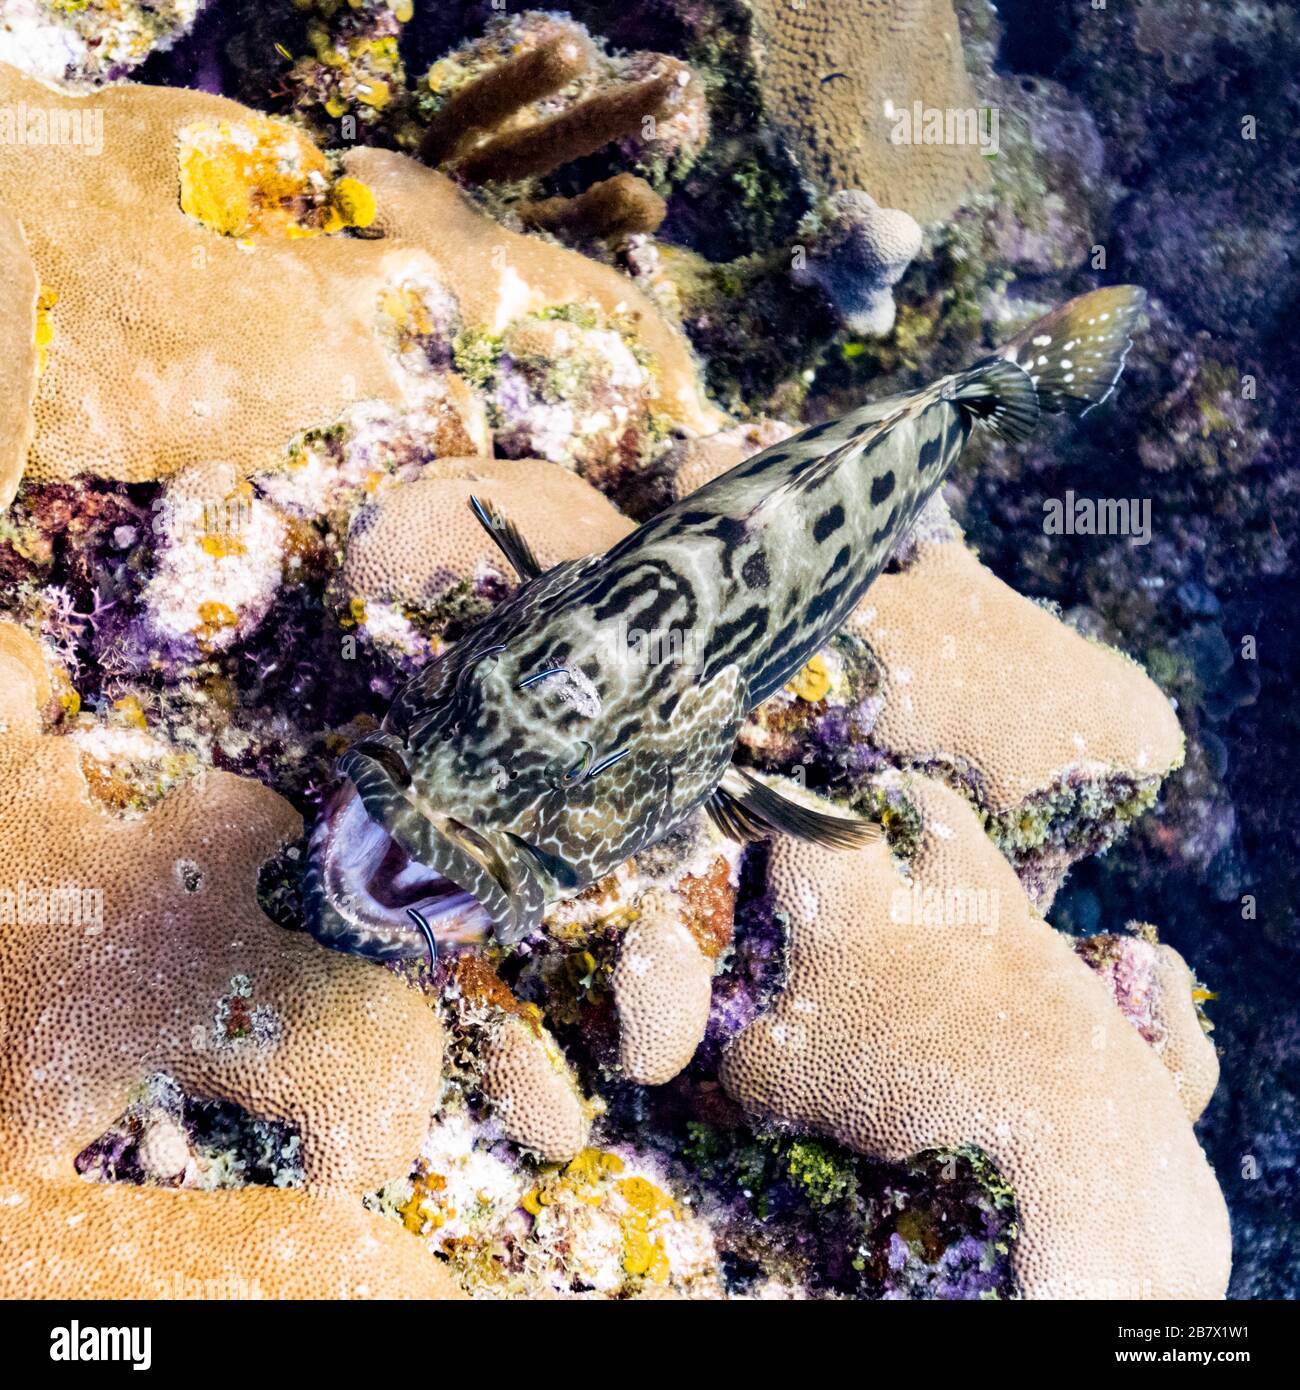 Close-up of fish among corals, Roatan, Honduras Stock Photo